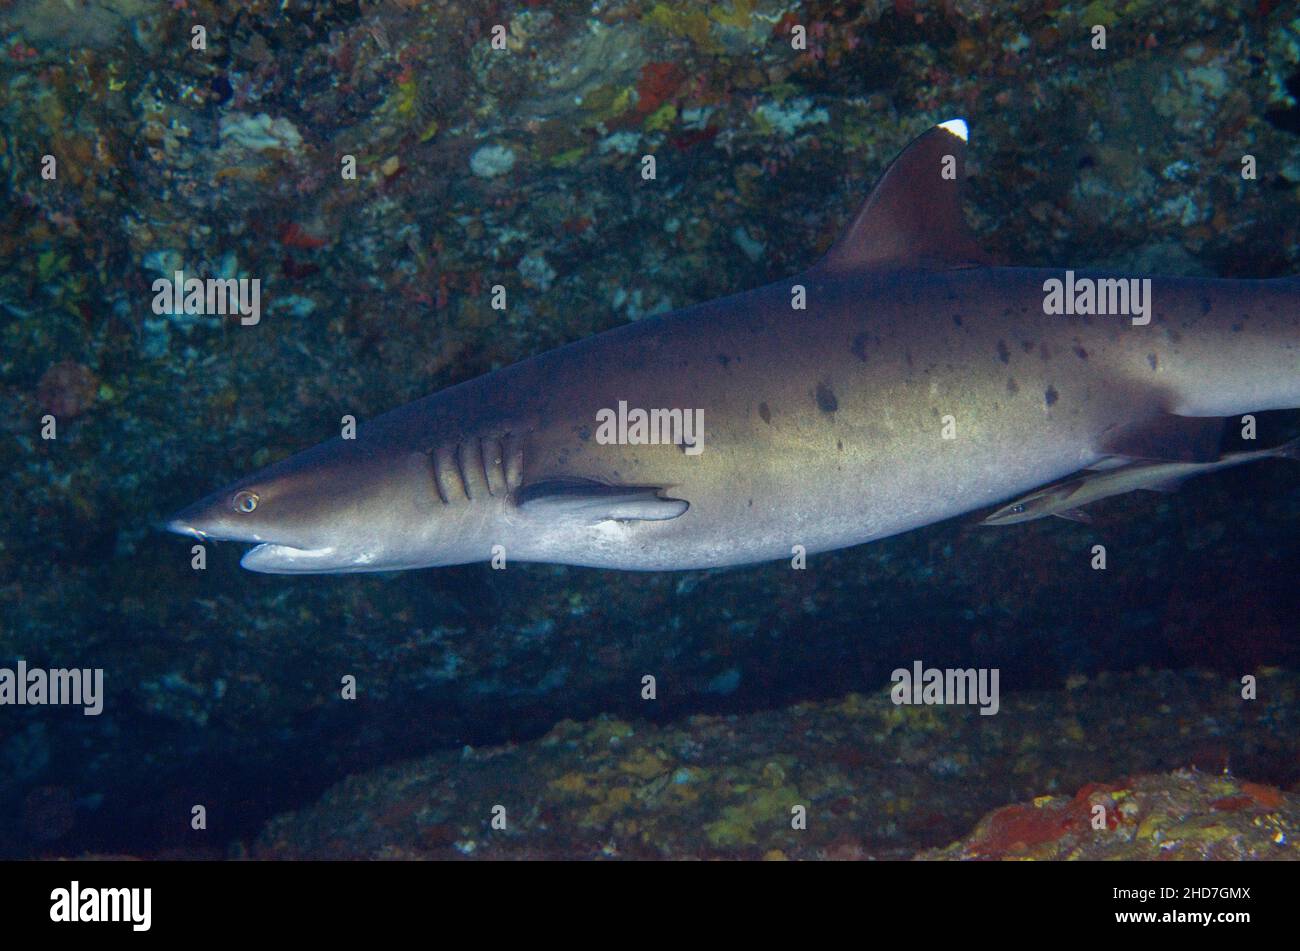 Whitetip Reef Shark (Triaenodon obesus) with Slender Suckerfish (Echeneis naucrates), Biaha dive site, Candidasa, Bali, Indonesia. Stock Photo